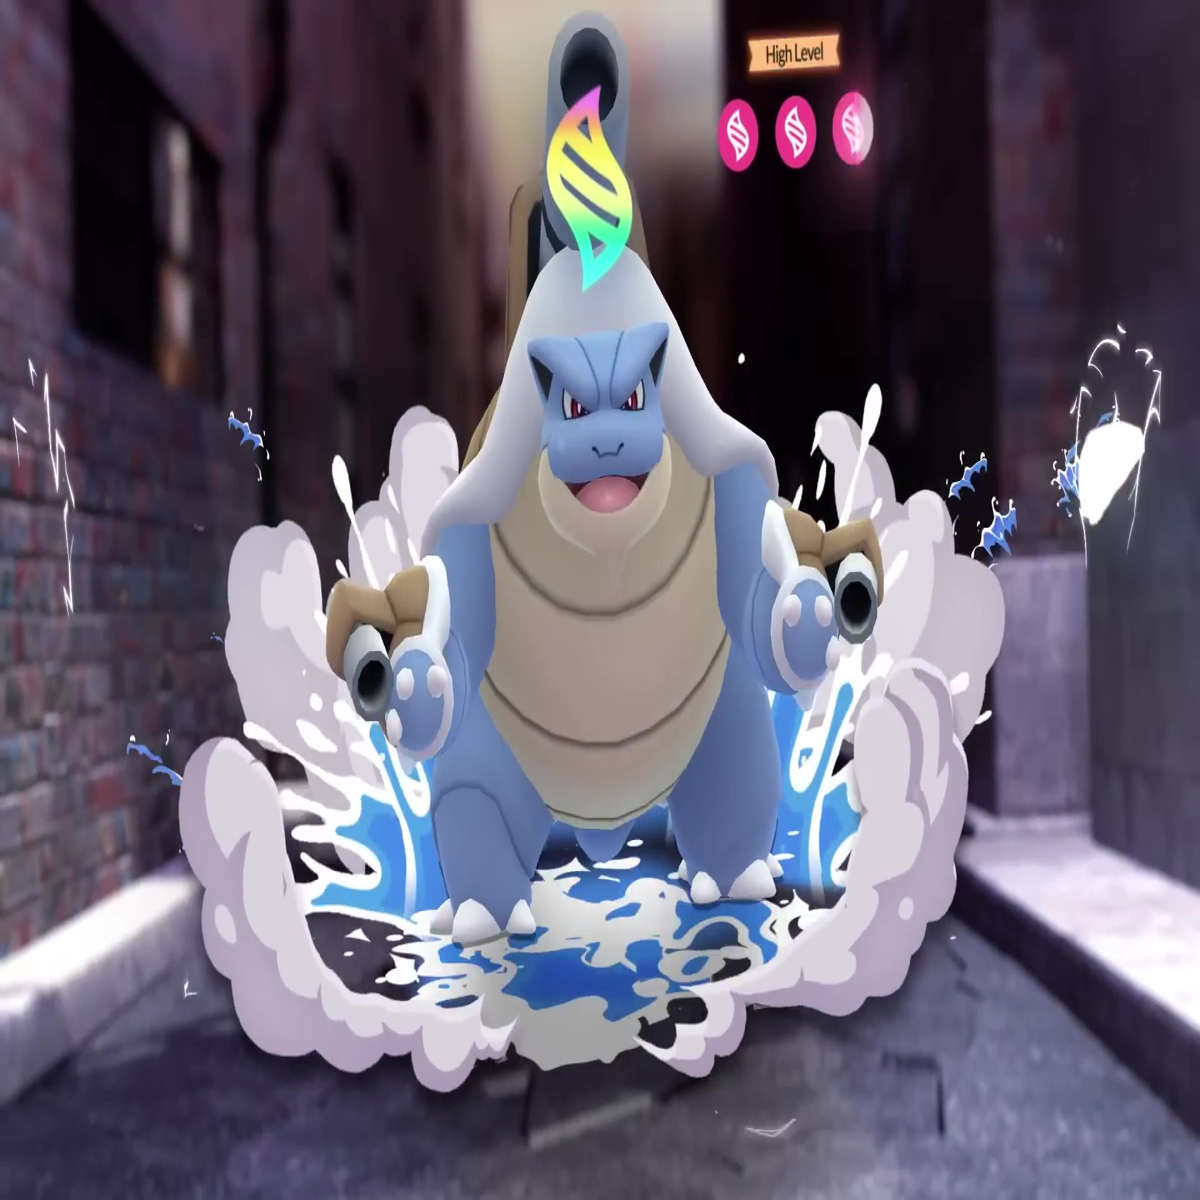 Pokémon GO - Mudanças na Mega Evolução Chegam ao Jogo